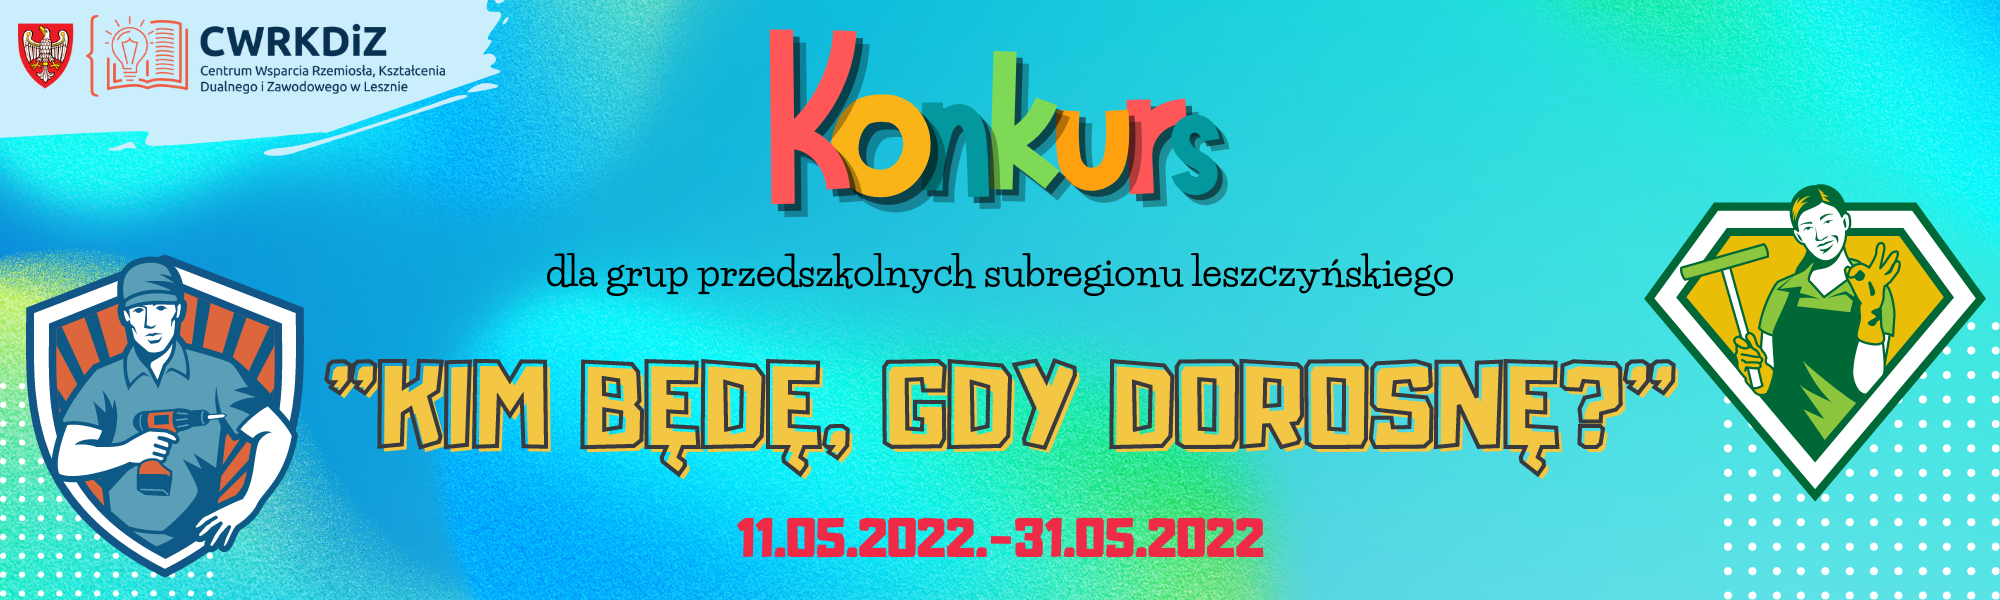 Grafika konkursu pod nazwą "Kim będę gdy dorosnę". Na grafice widnieje logo CWRKDiZ w Lesznie oraz data trwania konkursu i dwie postacie (kobieta i mężczyzna w strojach roboczych).